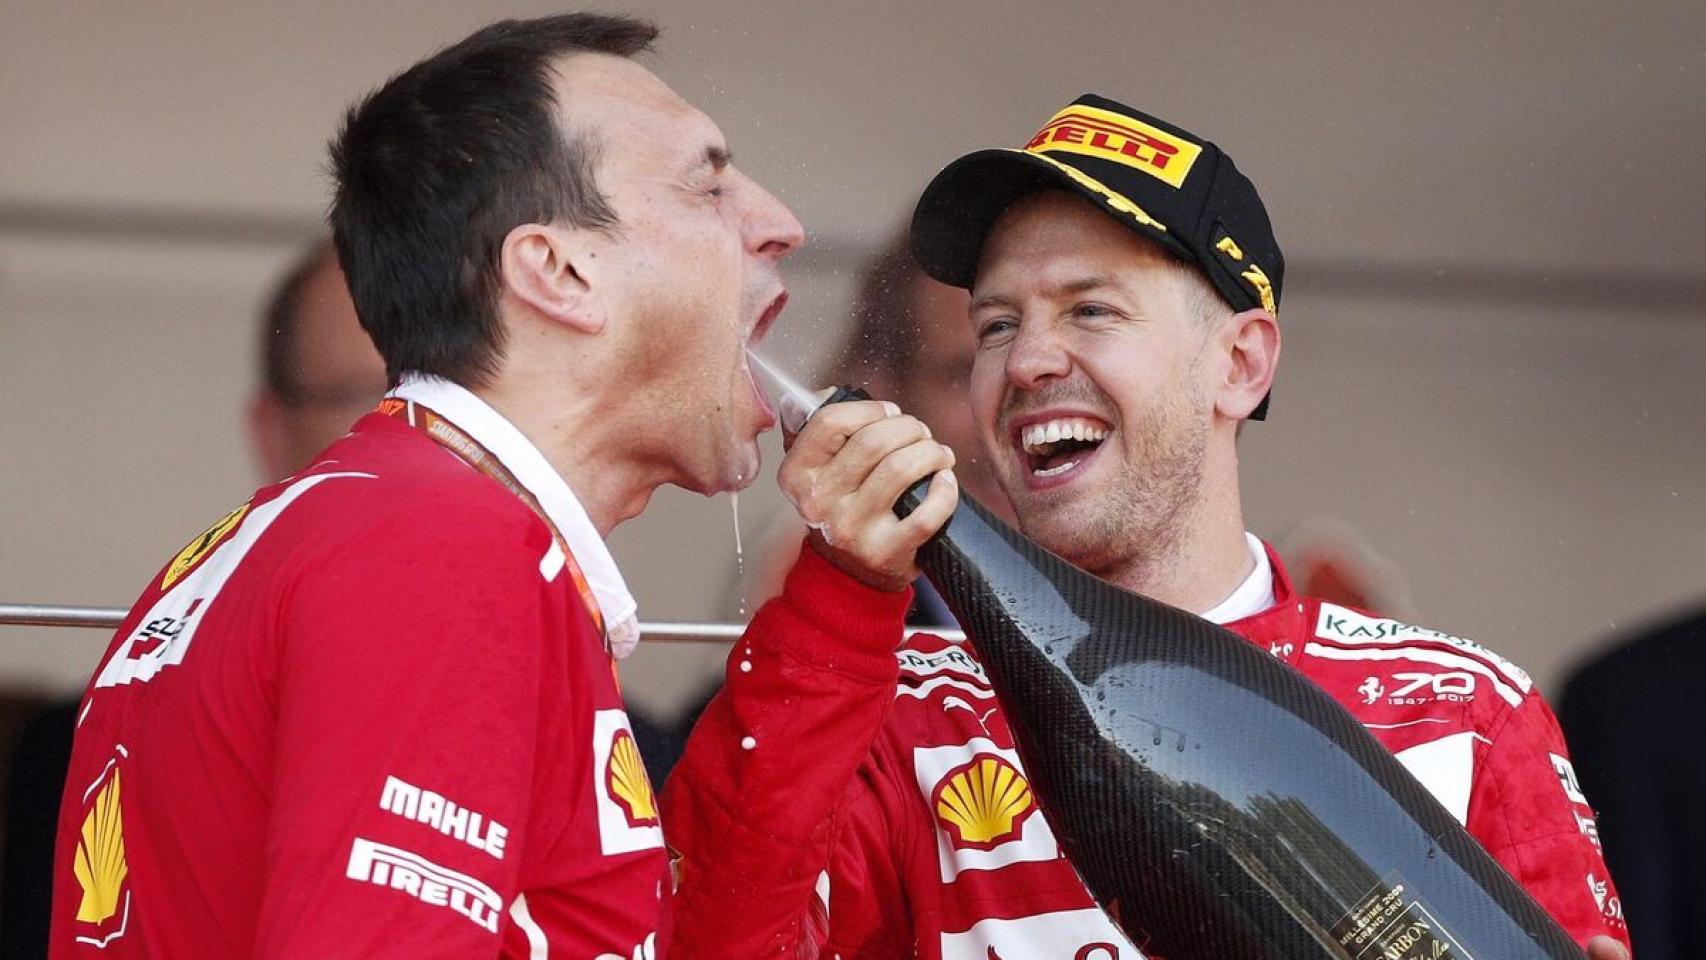 Riccardo Adami y Sebastian Vettel celebran una victoria en la Fórmula 1